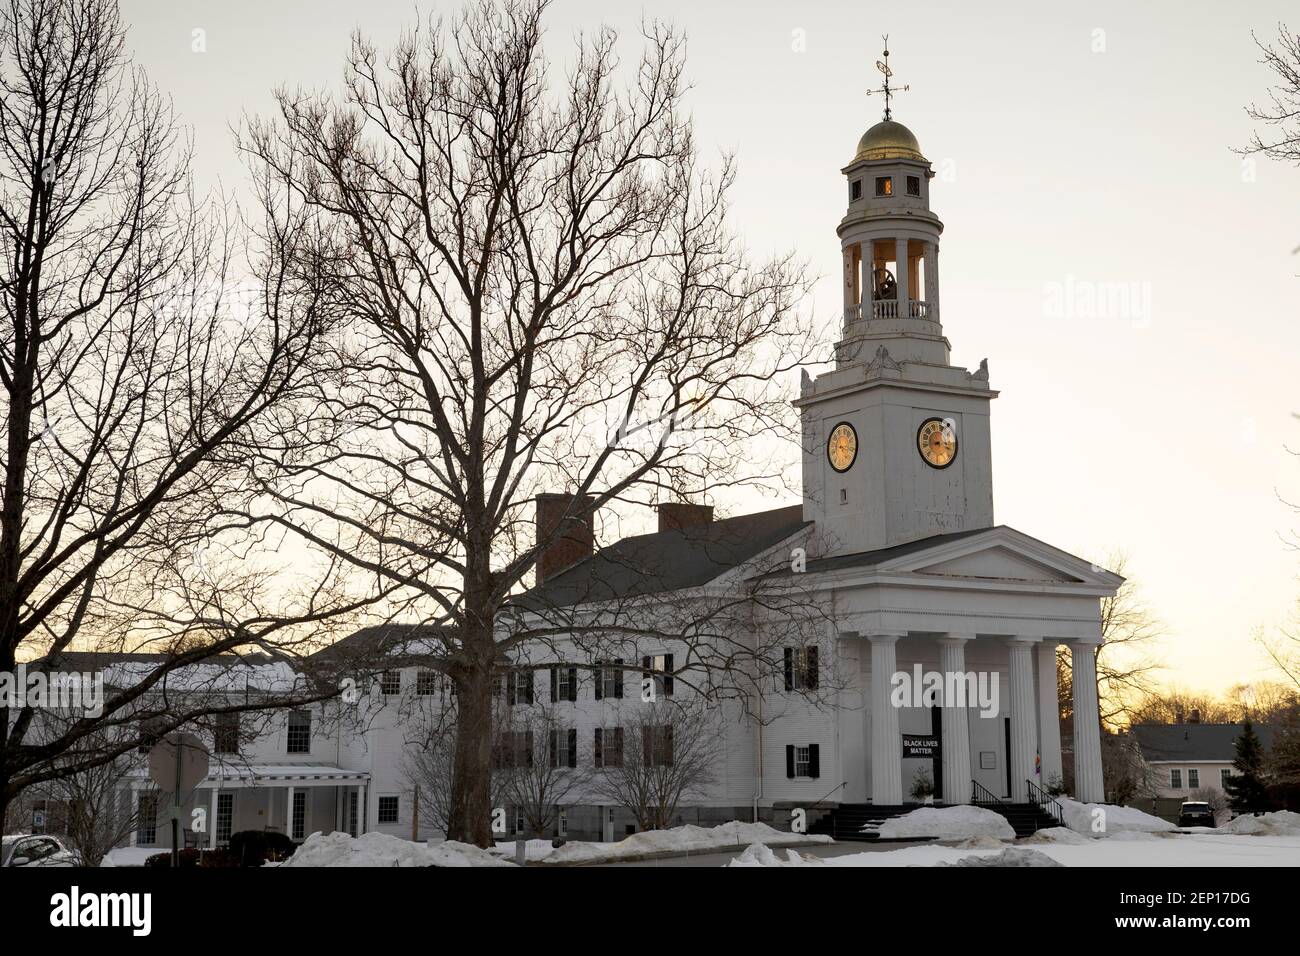 La prima chiesa unicalista Parrocchiale nel centro di Concord, Massachusetts, USA, al tramonto in una giornata invernale. Foto Stock